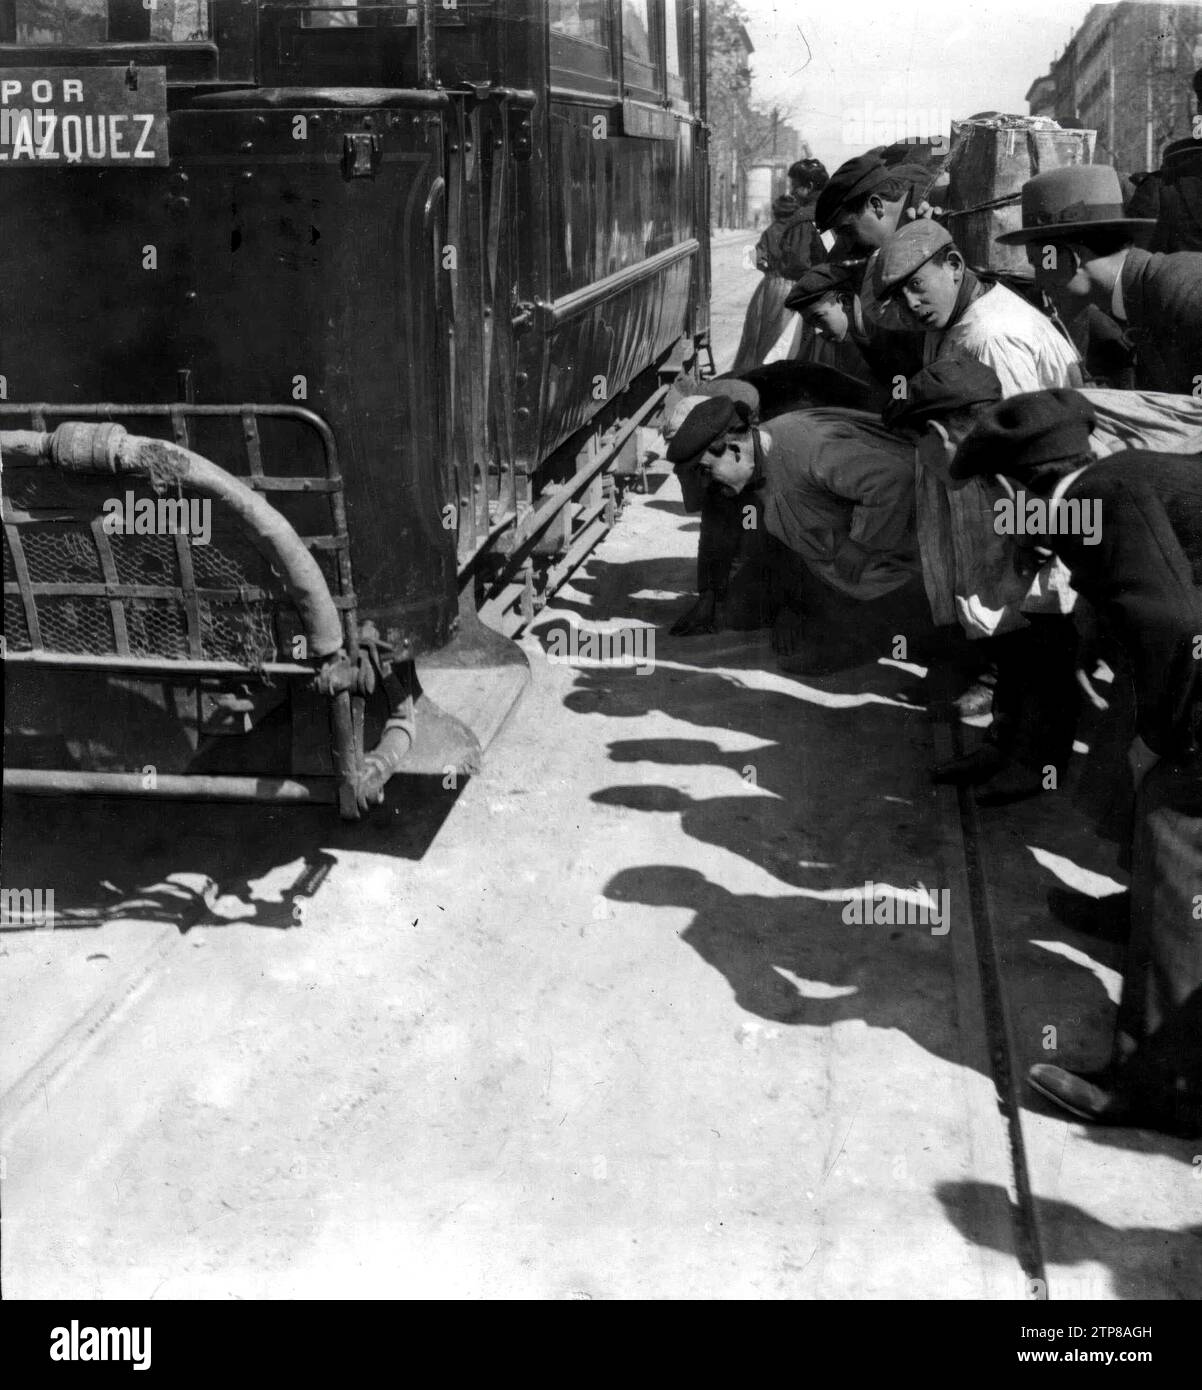 04/03/1911. Le public à côté du tram qui a causé la mort d'un enfant à l'embouchure de la rue prêt. Crédit : Album / Archivo ABC / Ramón Alba Banque D'Images